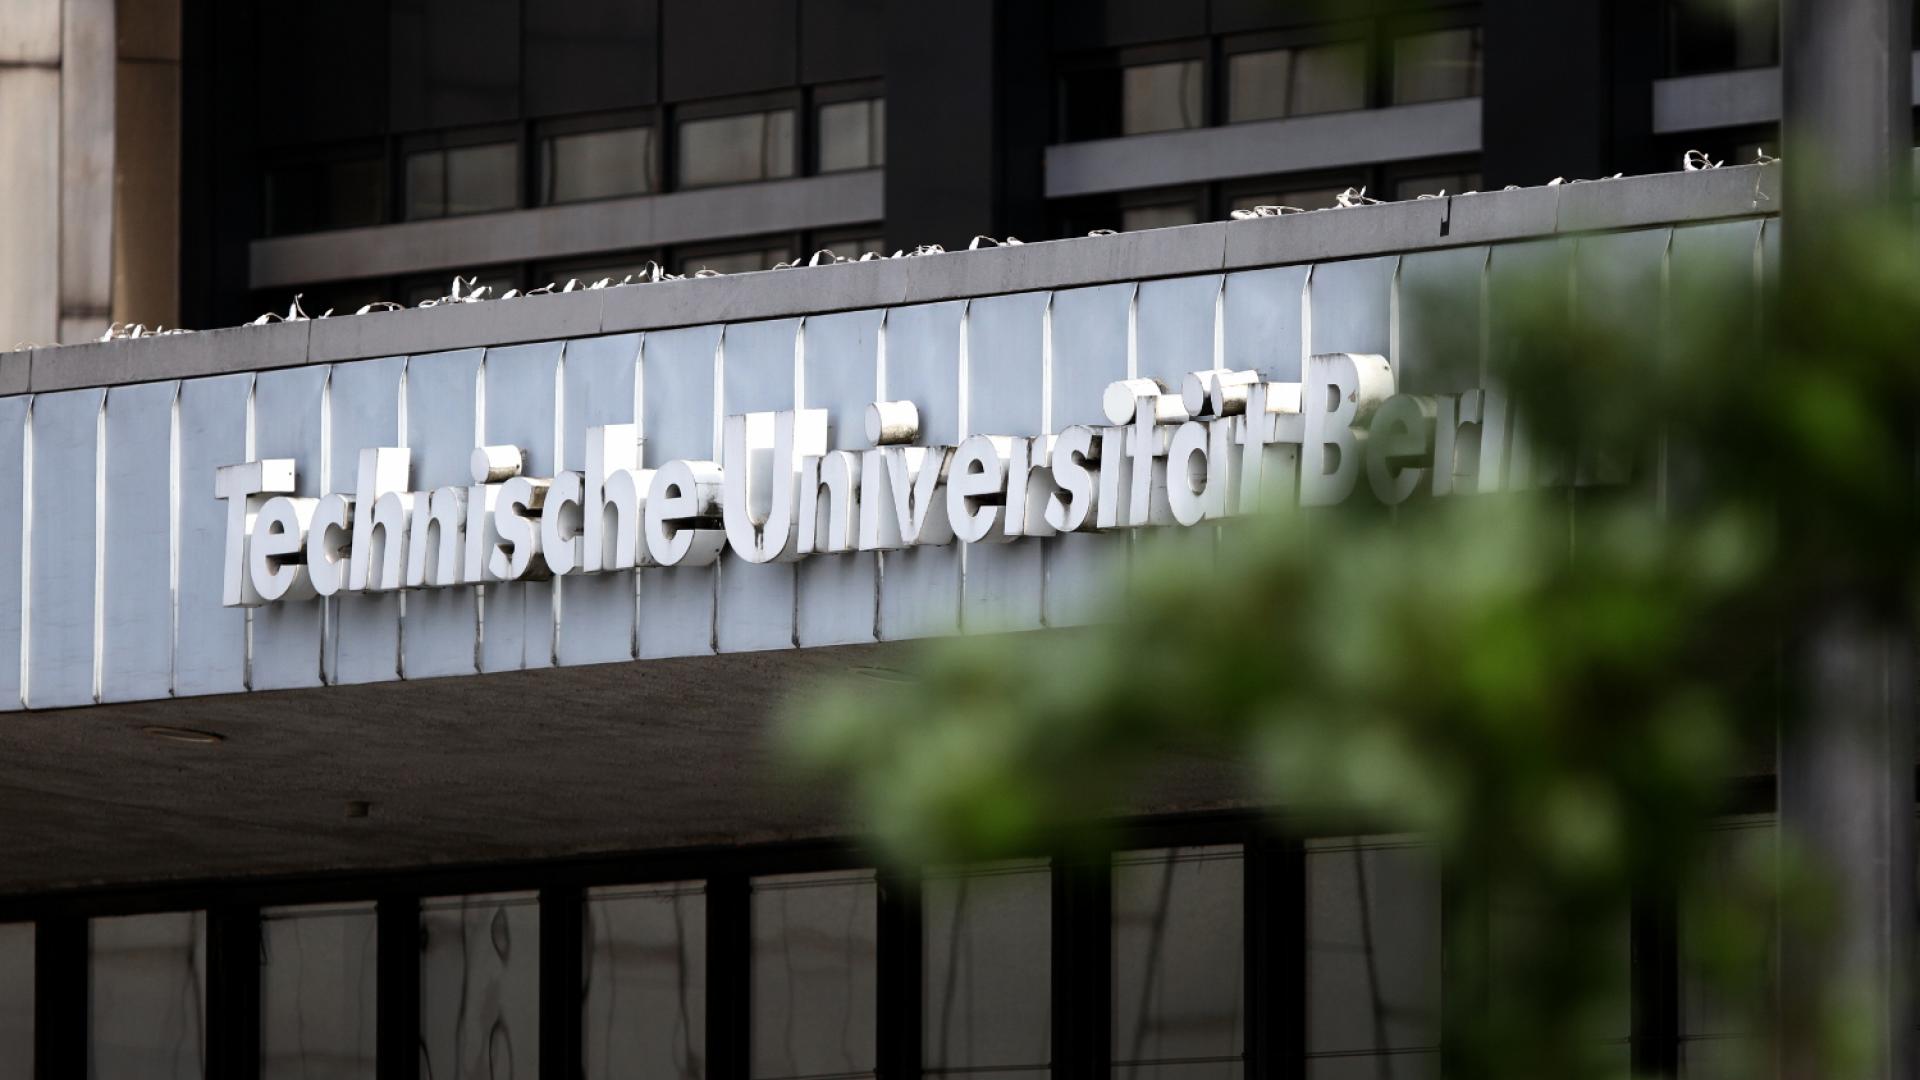 Technische Universität (TU Berlin) (über dts Nachrichtenagentur)